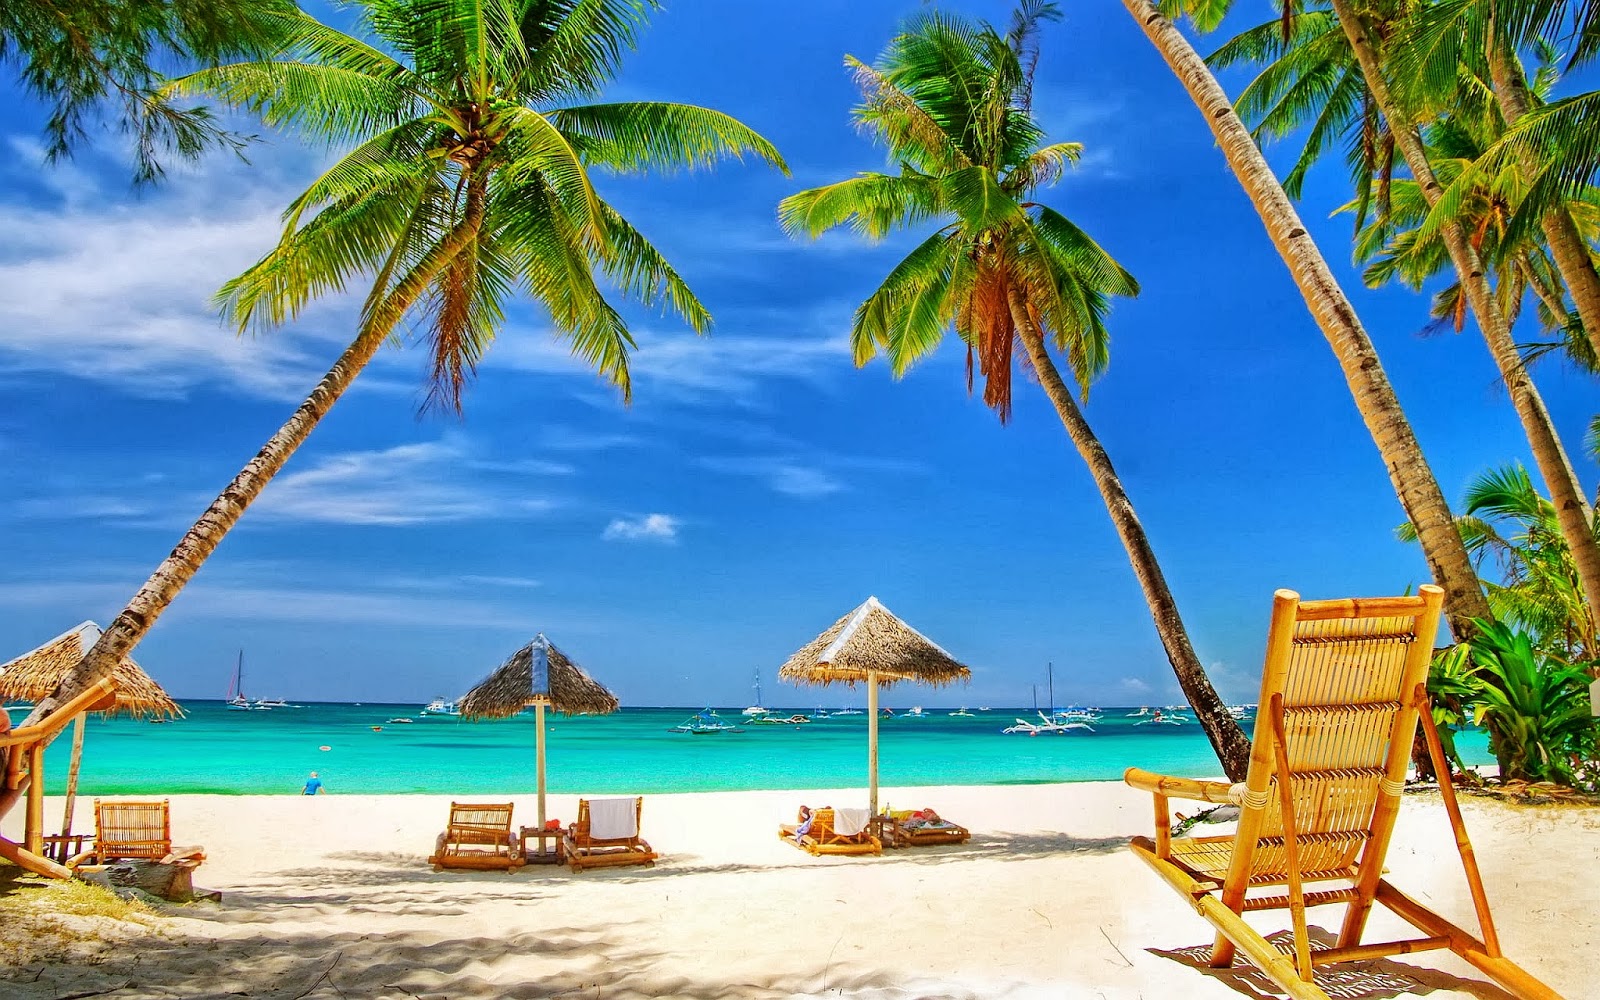 wallpaper pantai,vacanza,caraibico,albero,palma,spiaggia